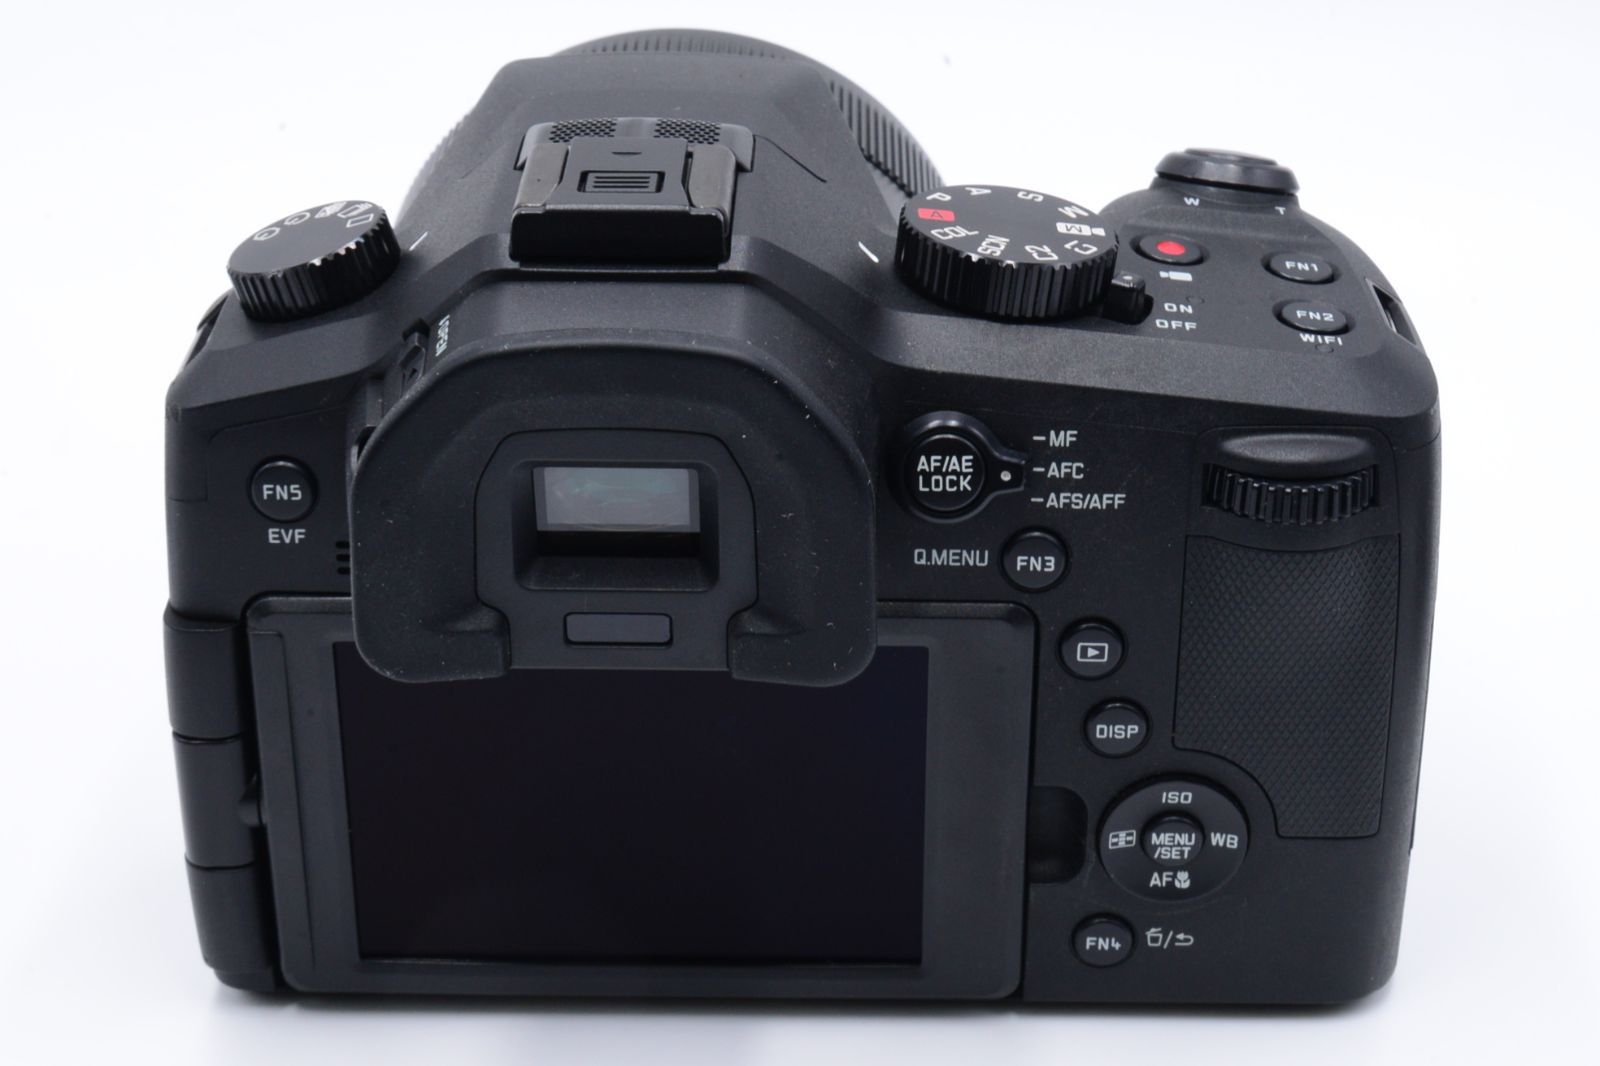 Leica デジタルカメラ ライカV-LUX Typ 114 2010万画素 光学16倍ズーム 18194カメラ